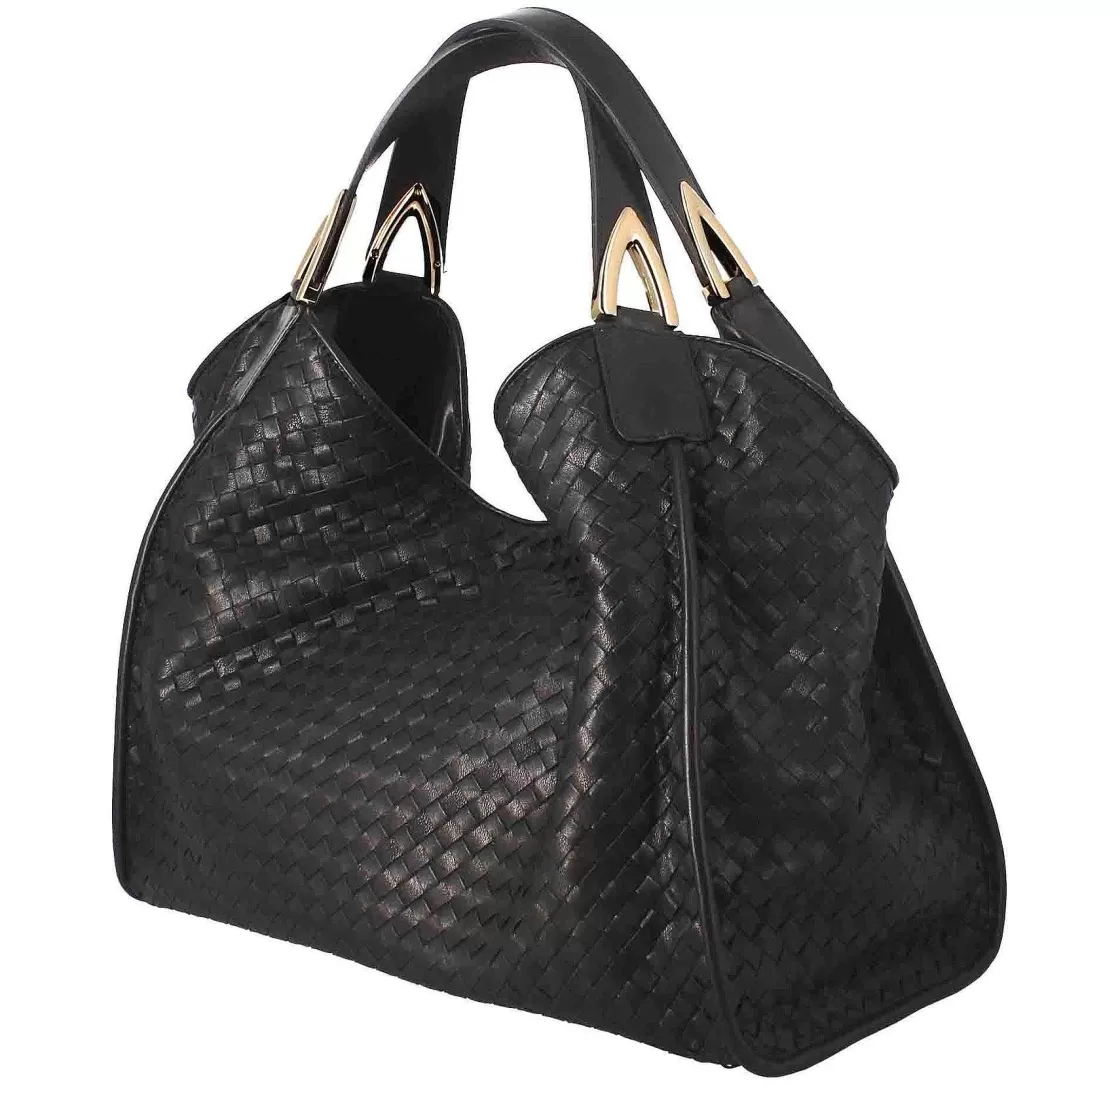 Leonardo Handmade Women'S Handbag In Black Woven Leather Online